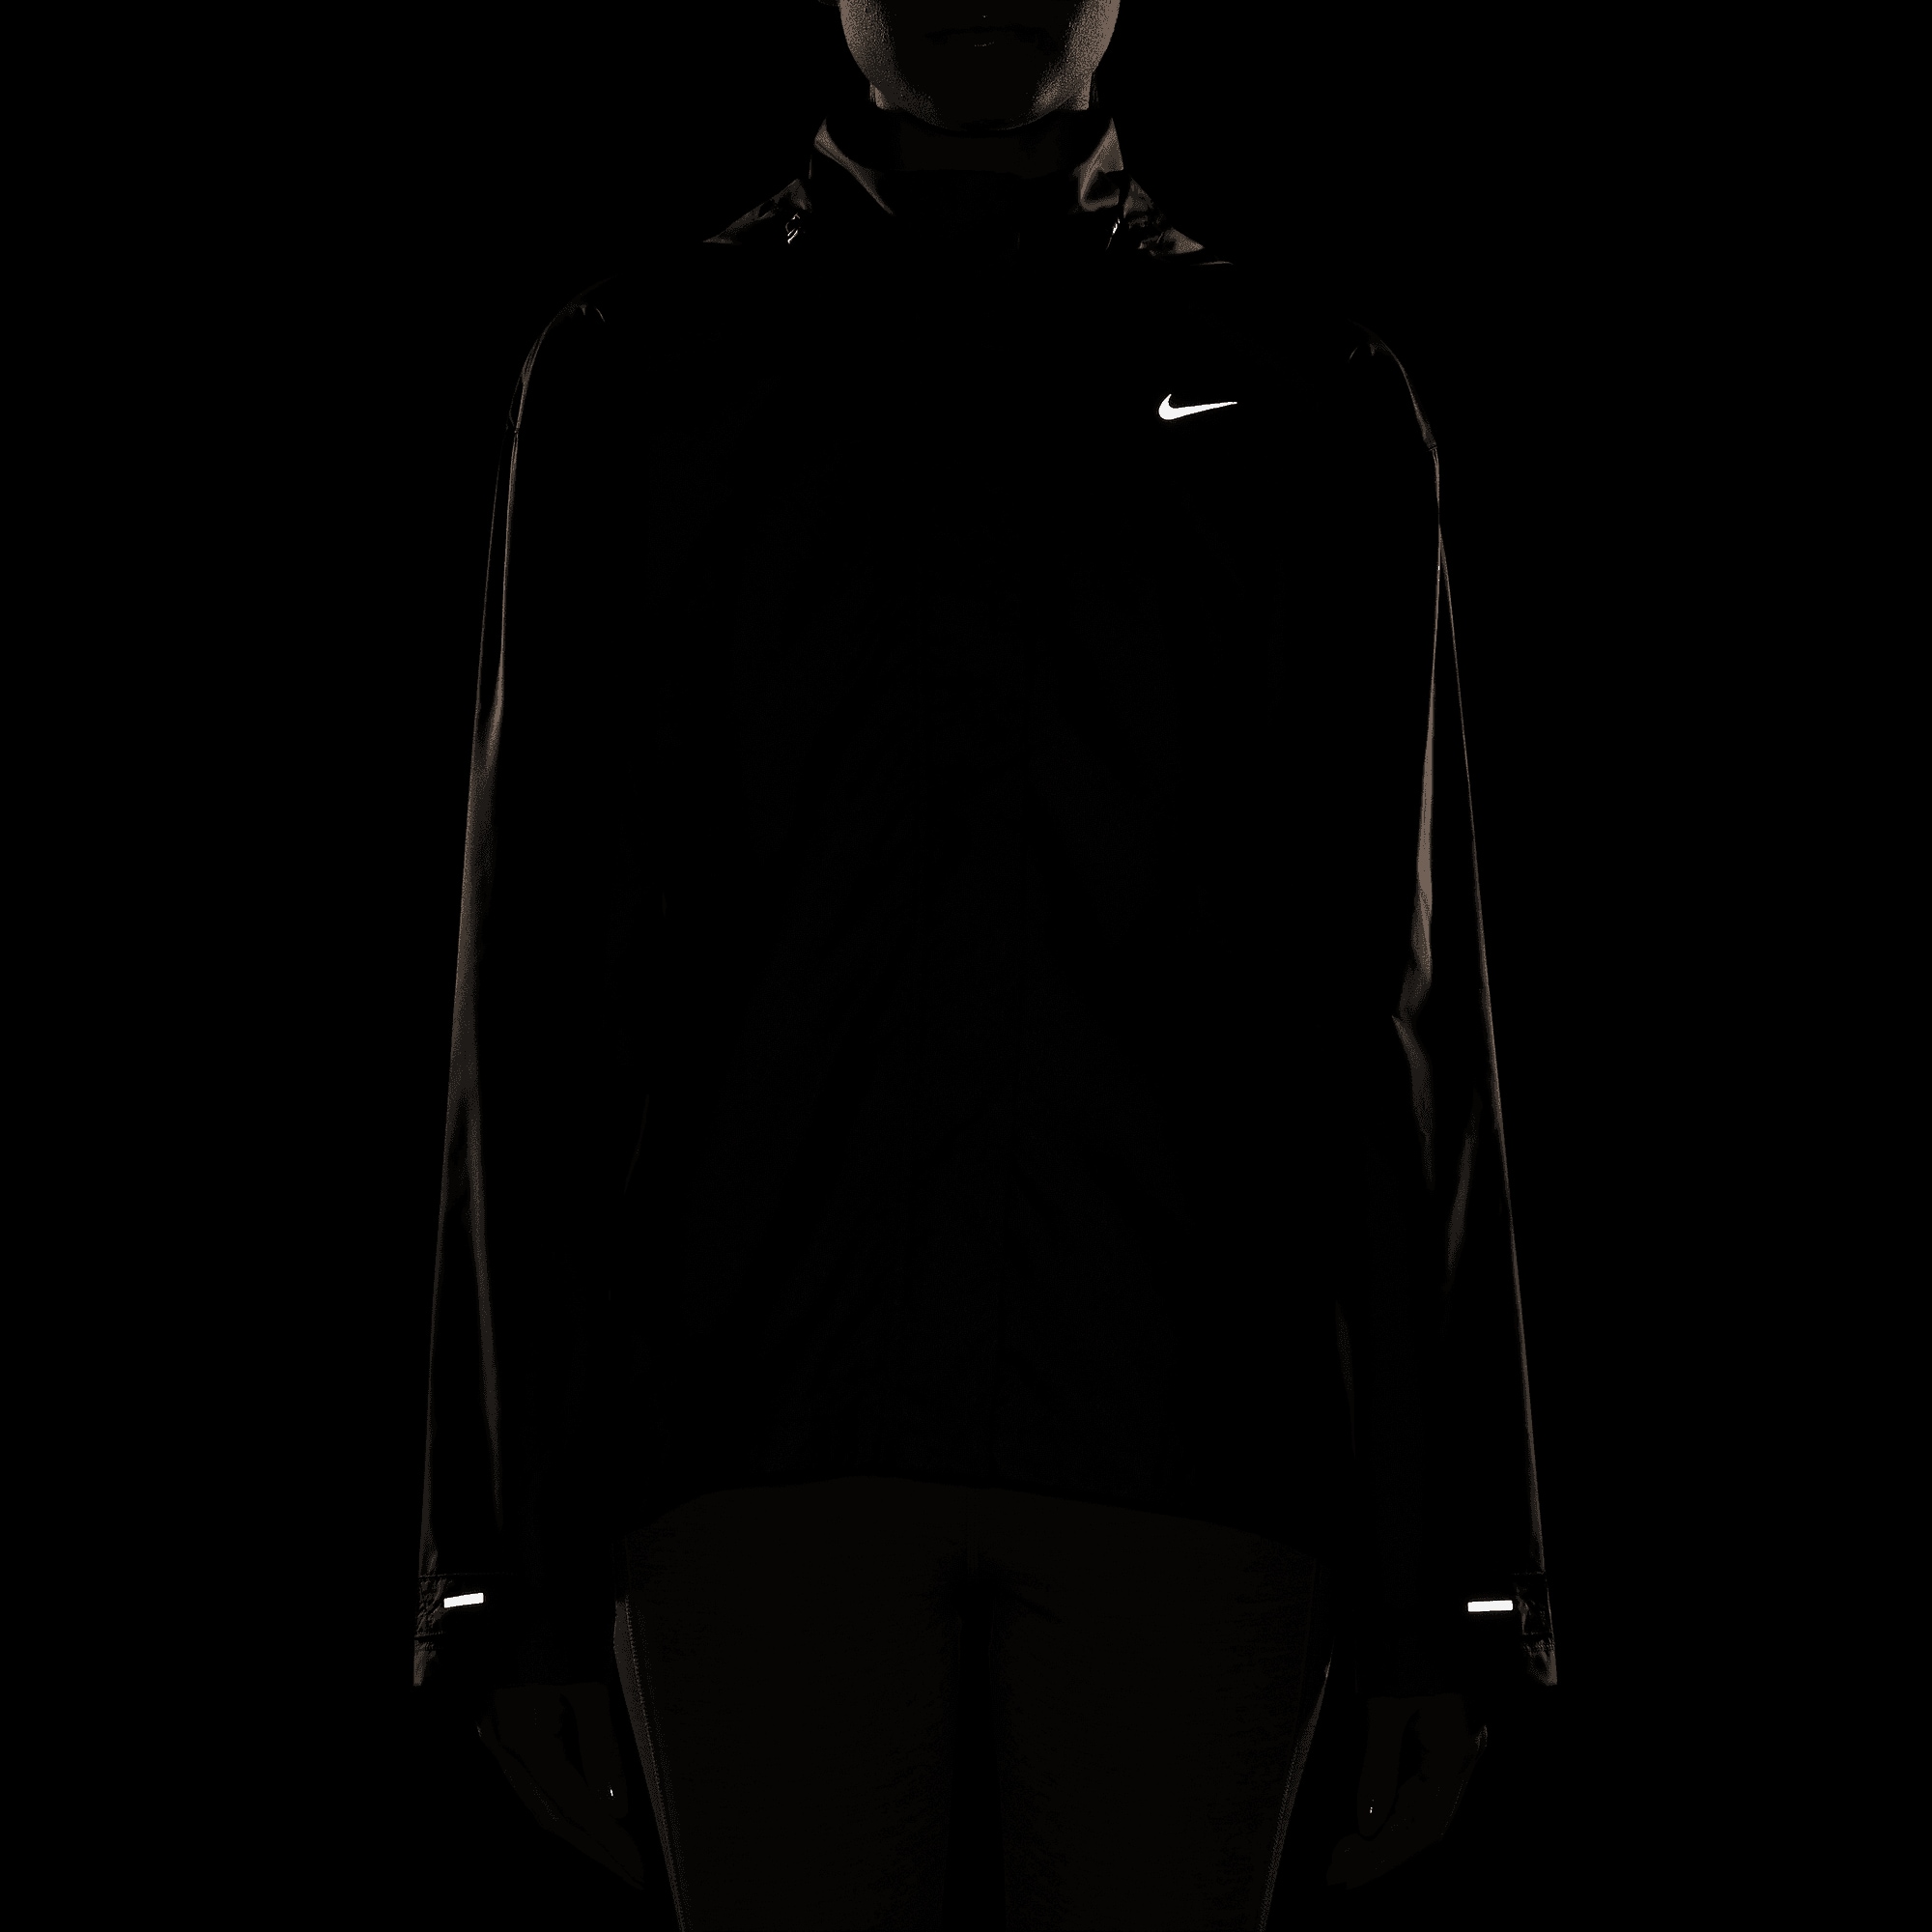 REPEL Nike JACKET« NK »W online Laufjacke FAST